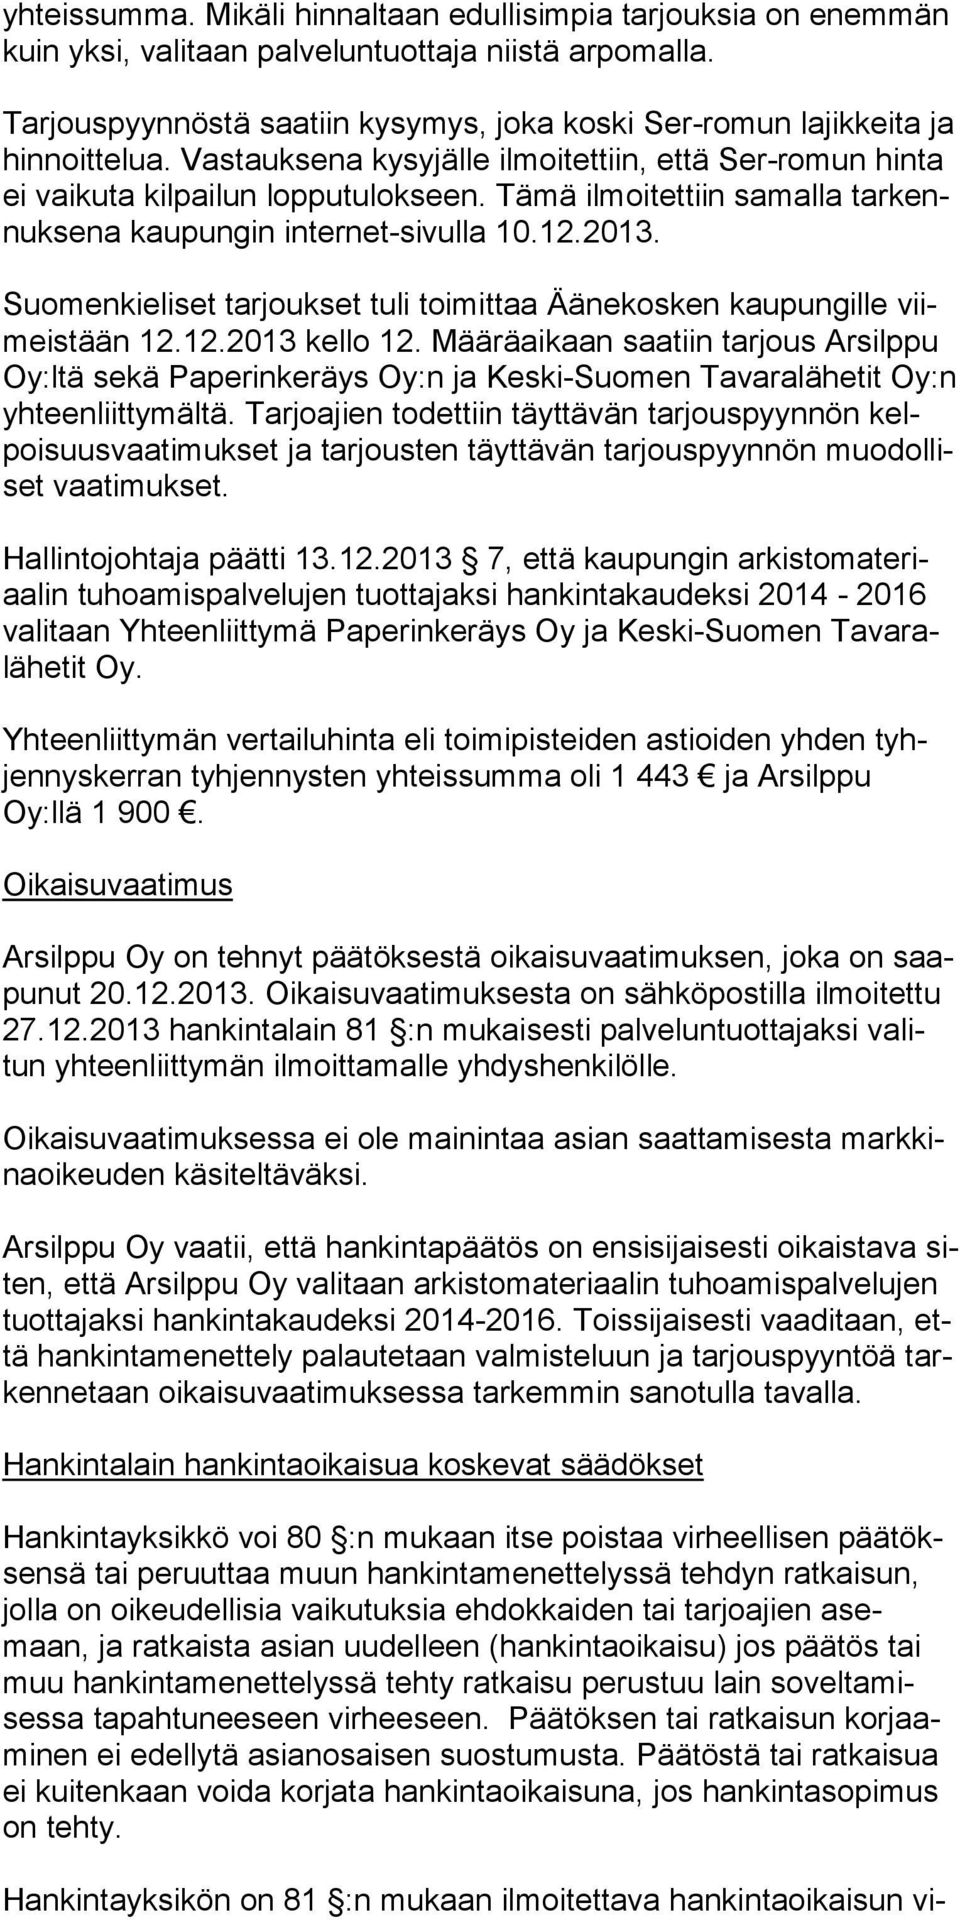 Tämä ilmoitettiin samalla tarkennuksena kaupungin in ternet-sivulla 10.12.2013. Suomenkieliset tarjoukset tuli toimittaa Äänekosken kaupungille viimeistään 12.12.2013 kello 12.